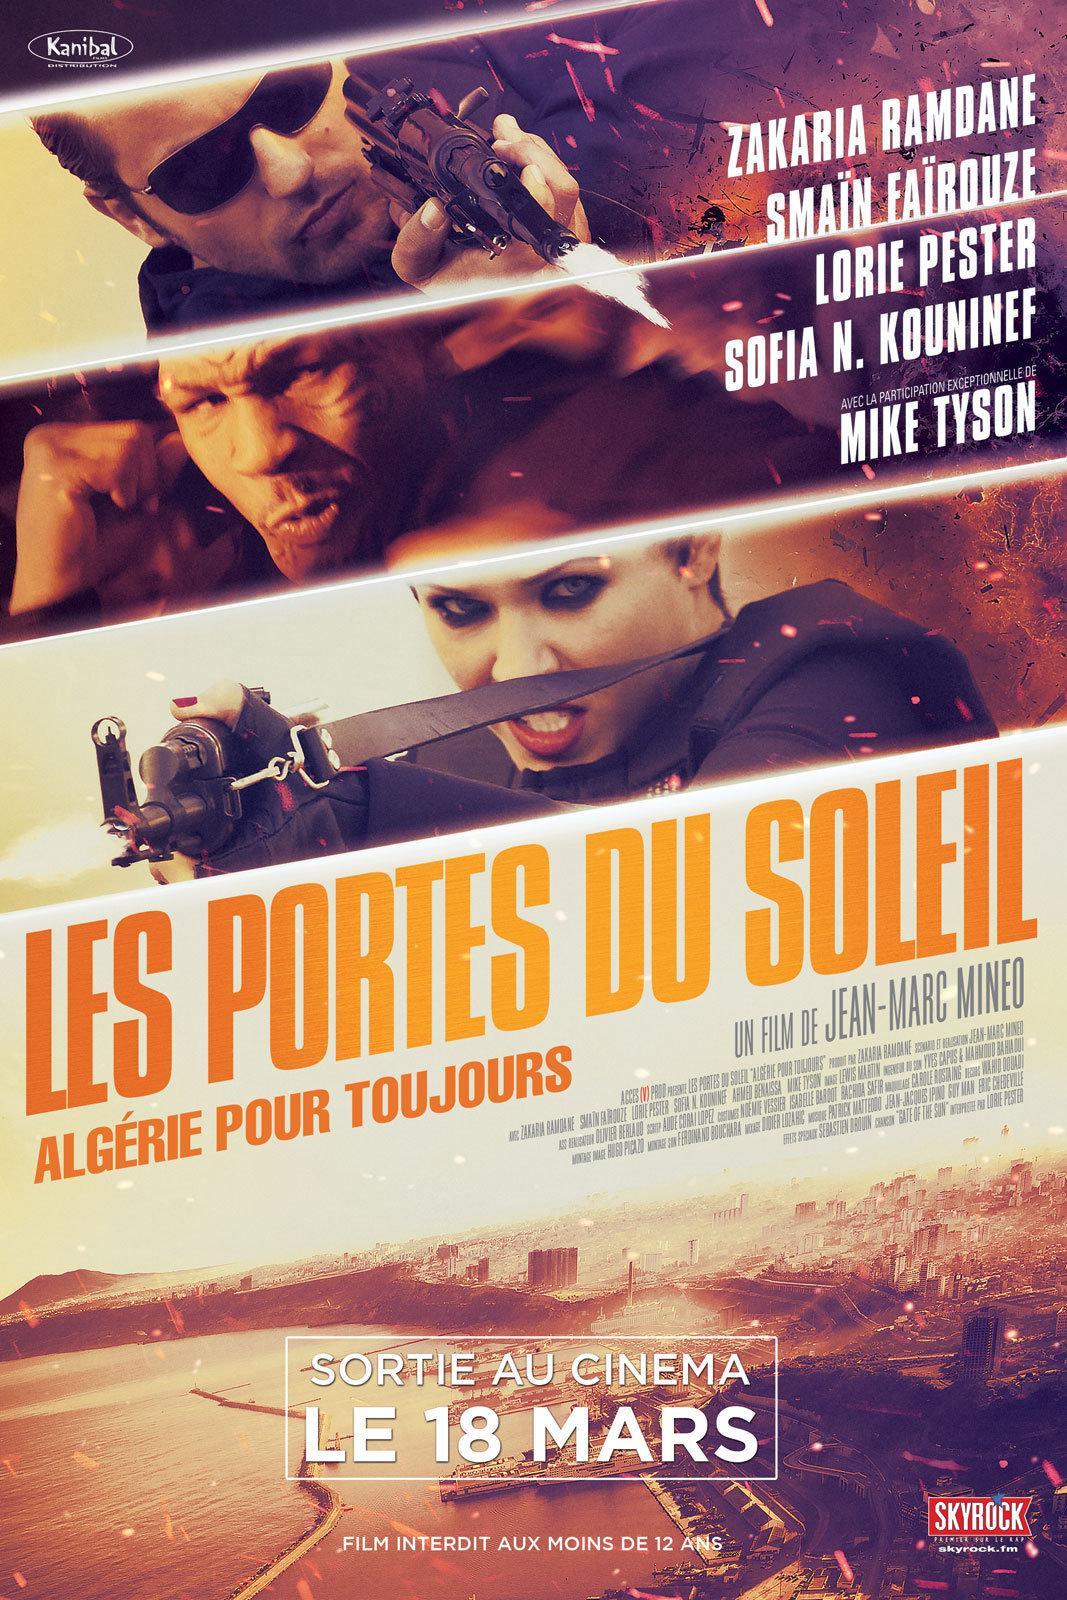 Постер фильма Les portes du soleil: Algérie pour toujours